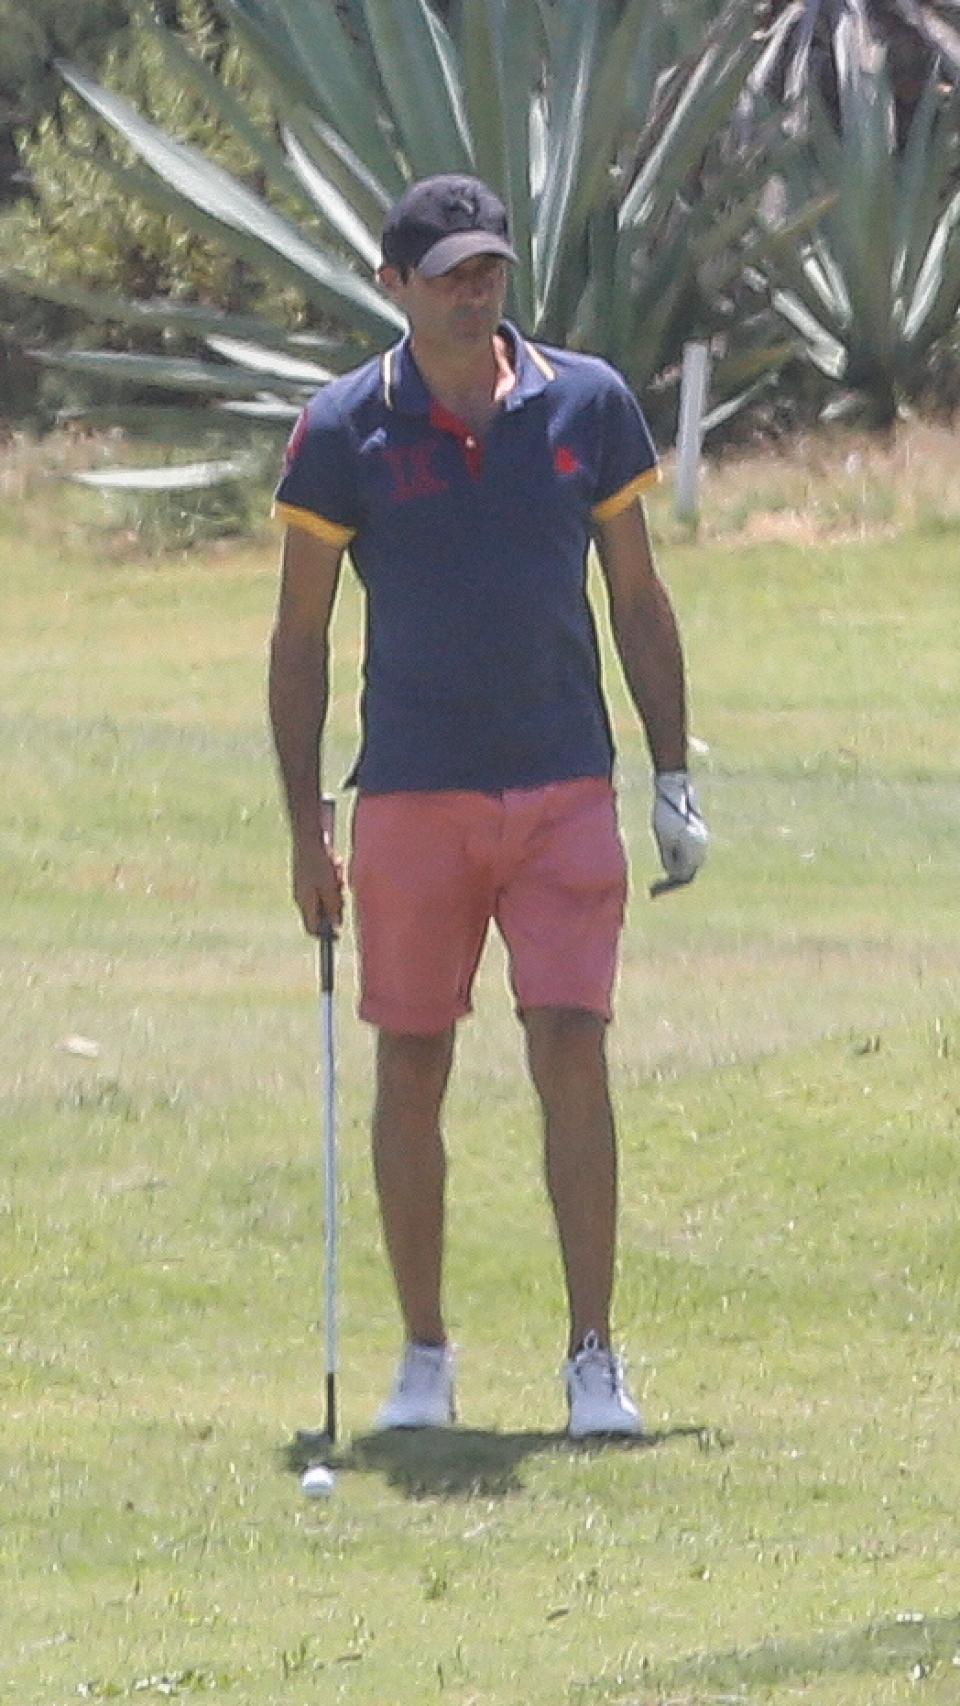 Enrique jugando al golf en Almería.